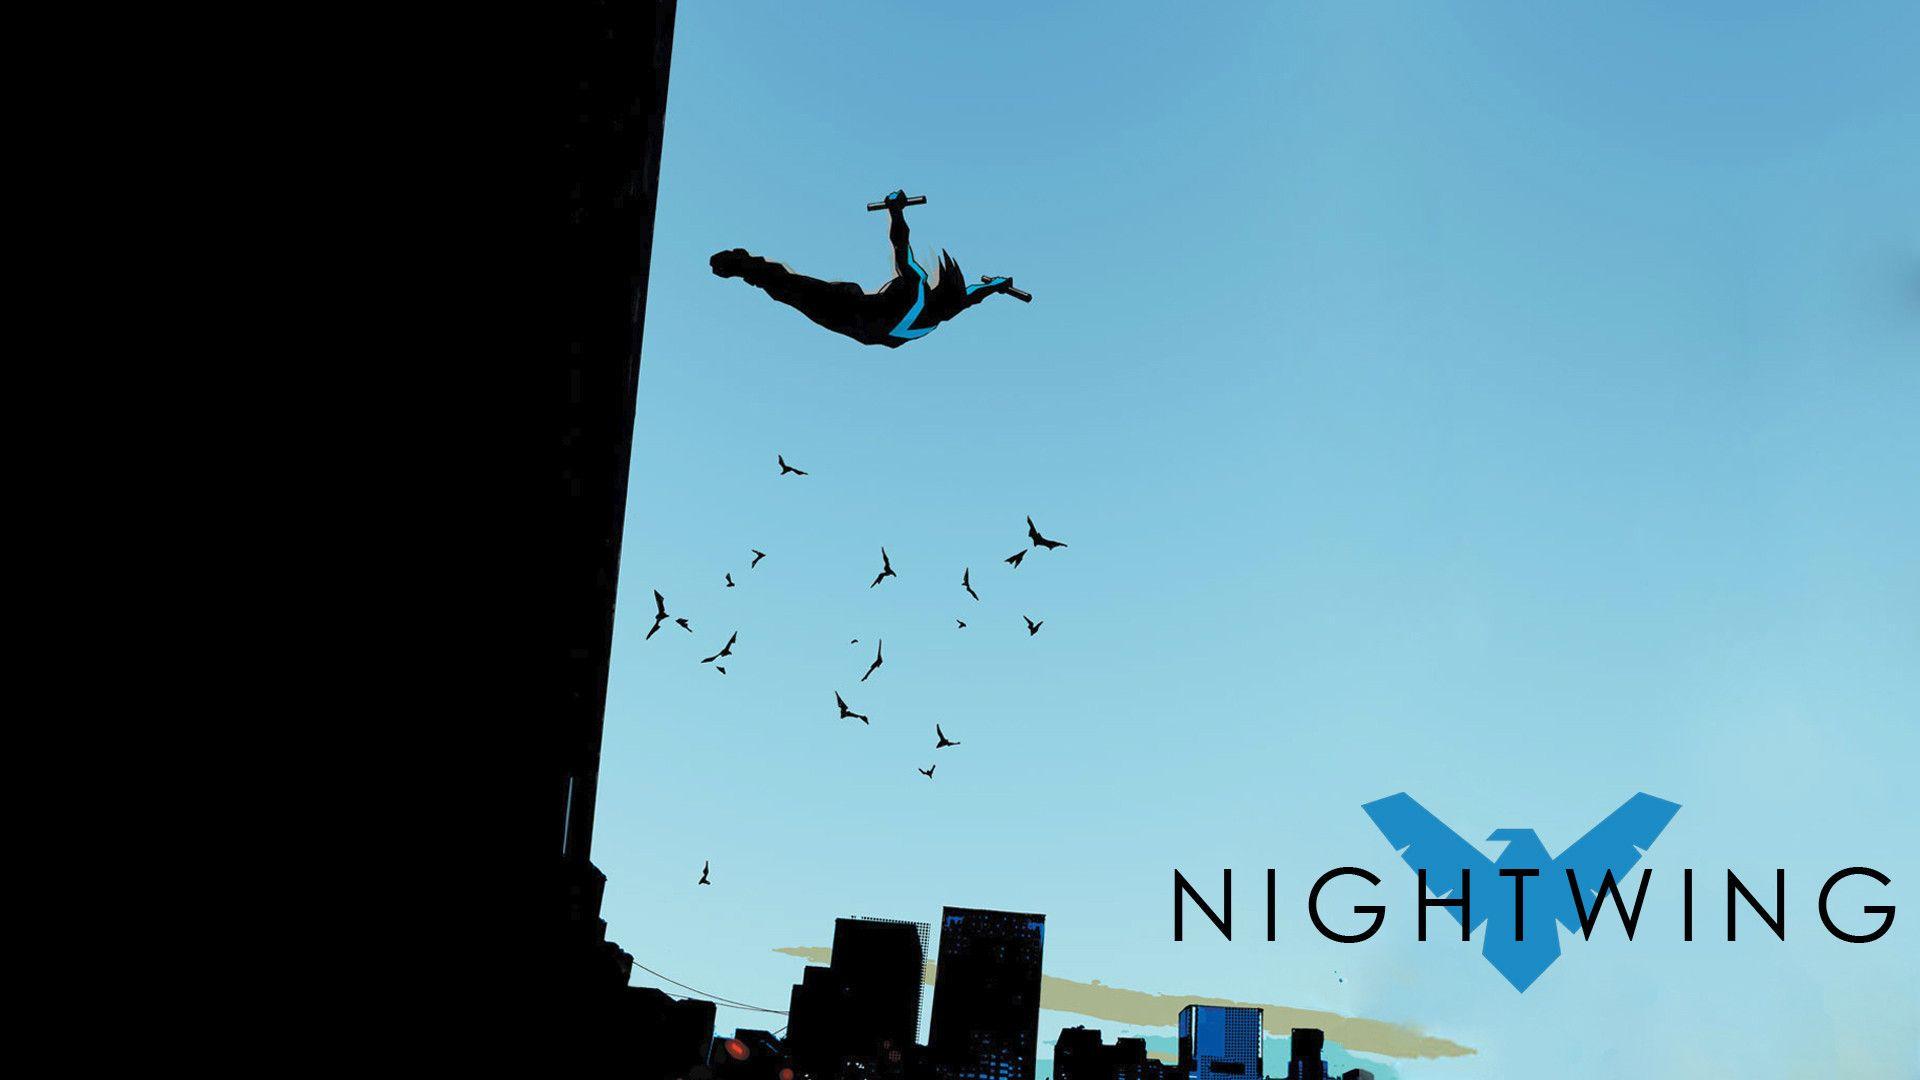 My favorite Nightwing wallpaper